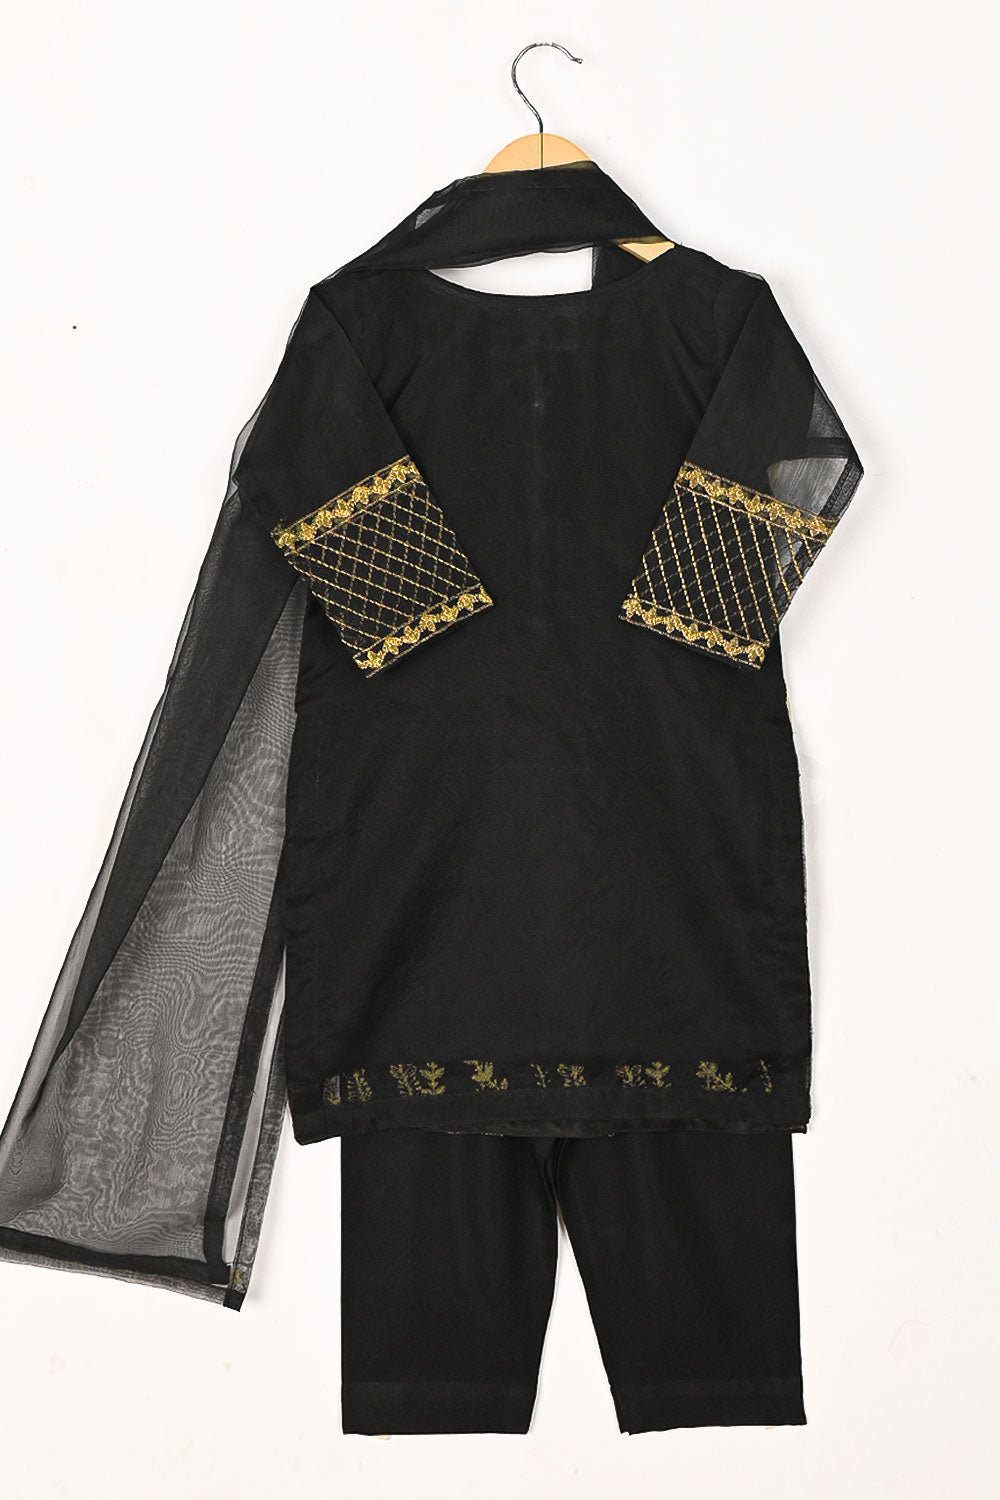 TKF-105-Black - Kids 3Pc Organza Formal Dress